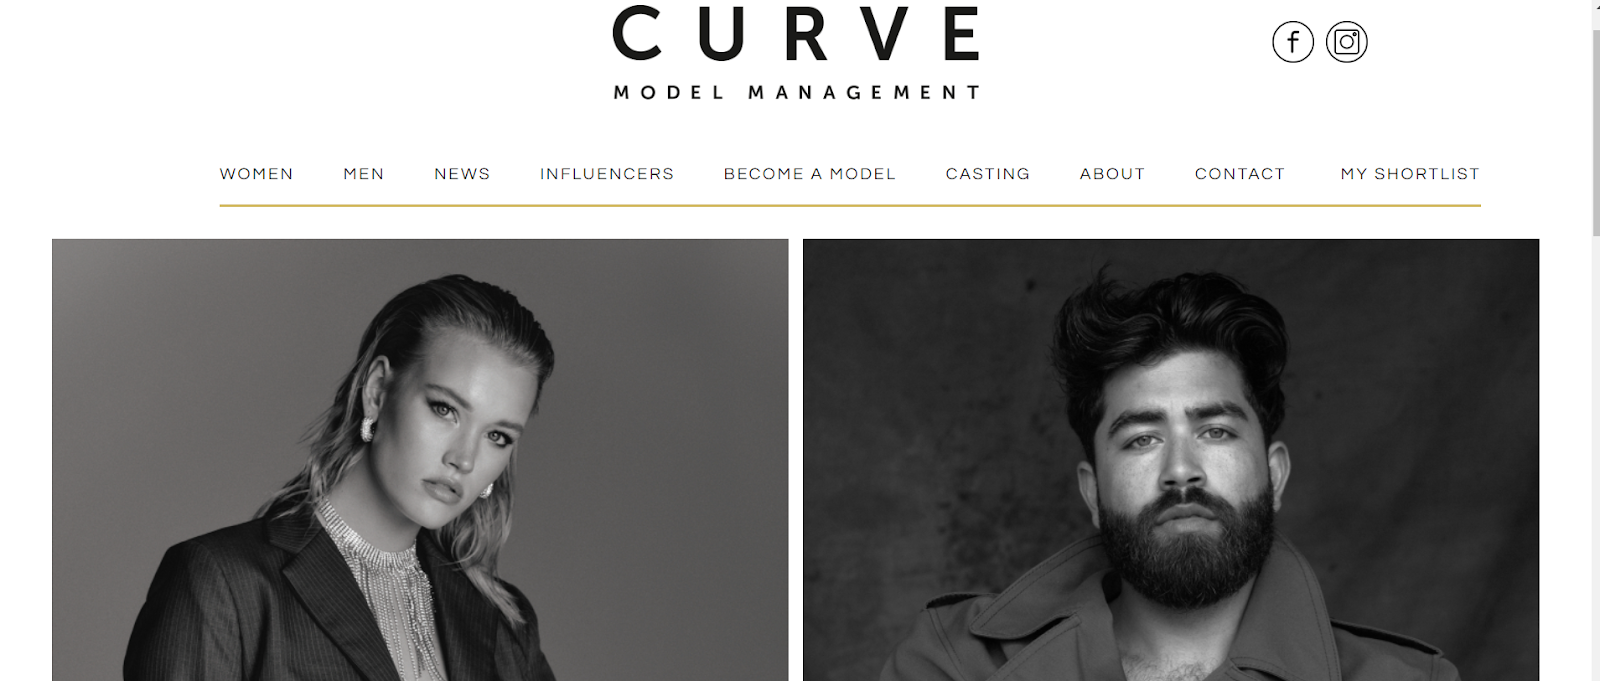 Curve Model Management